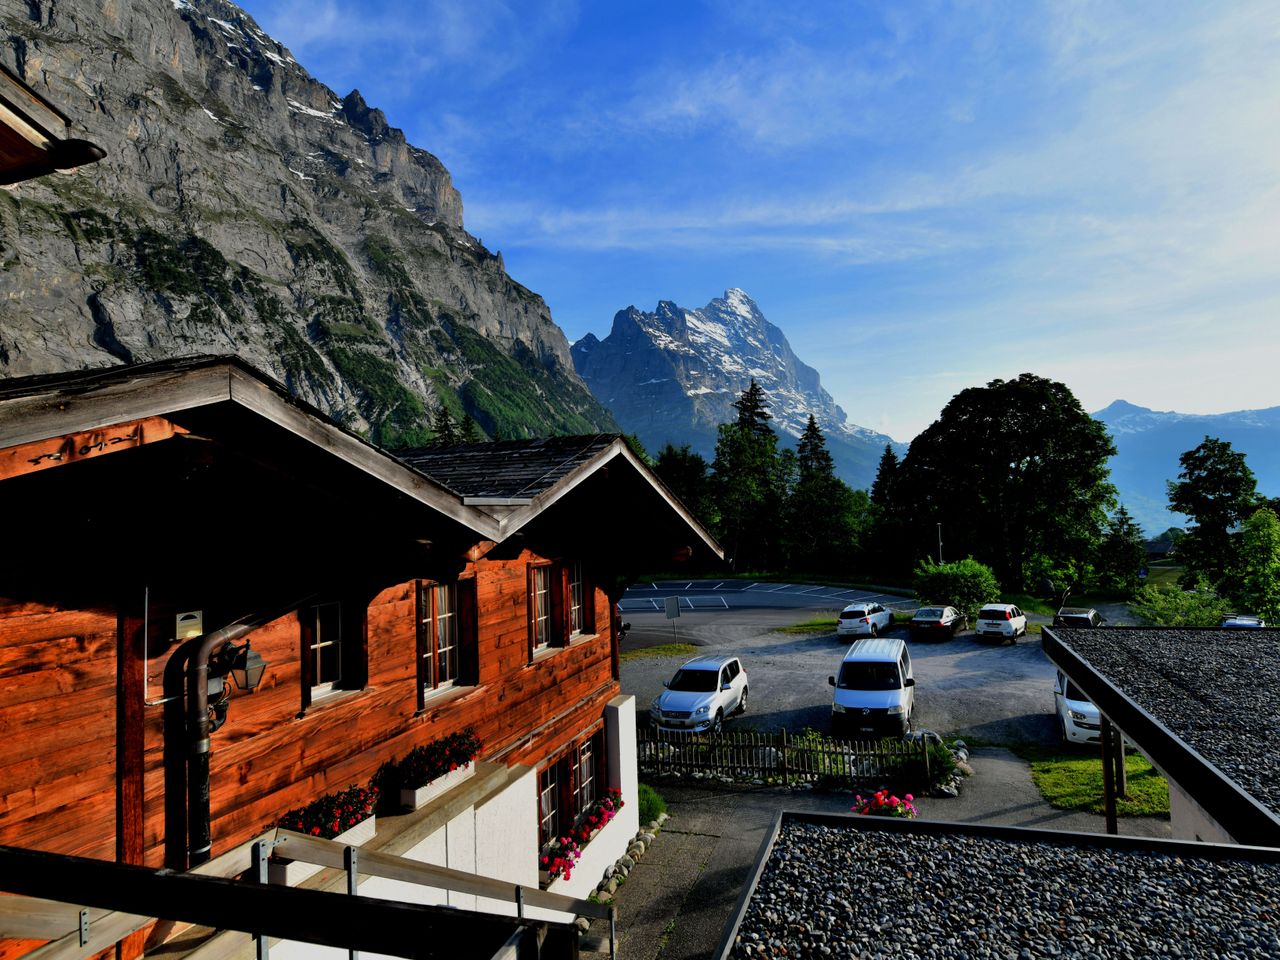 Gratis Passfahrt mit dem Grindelwald Bus